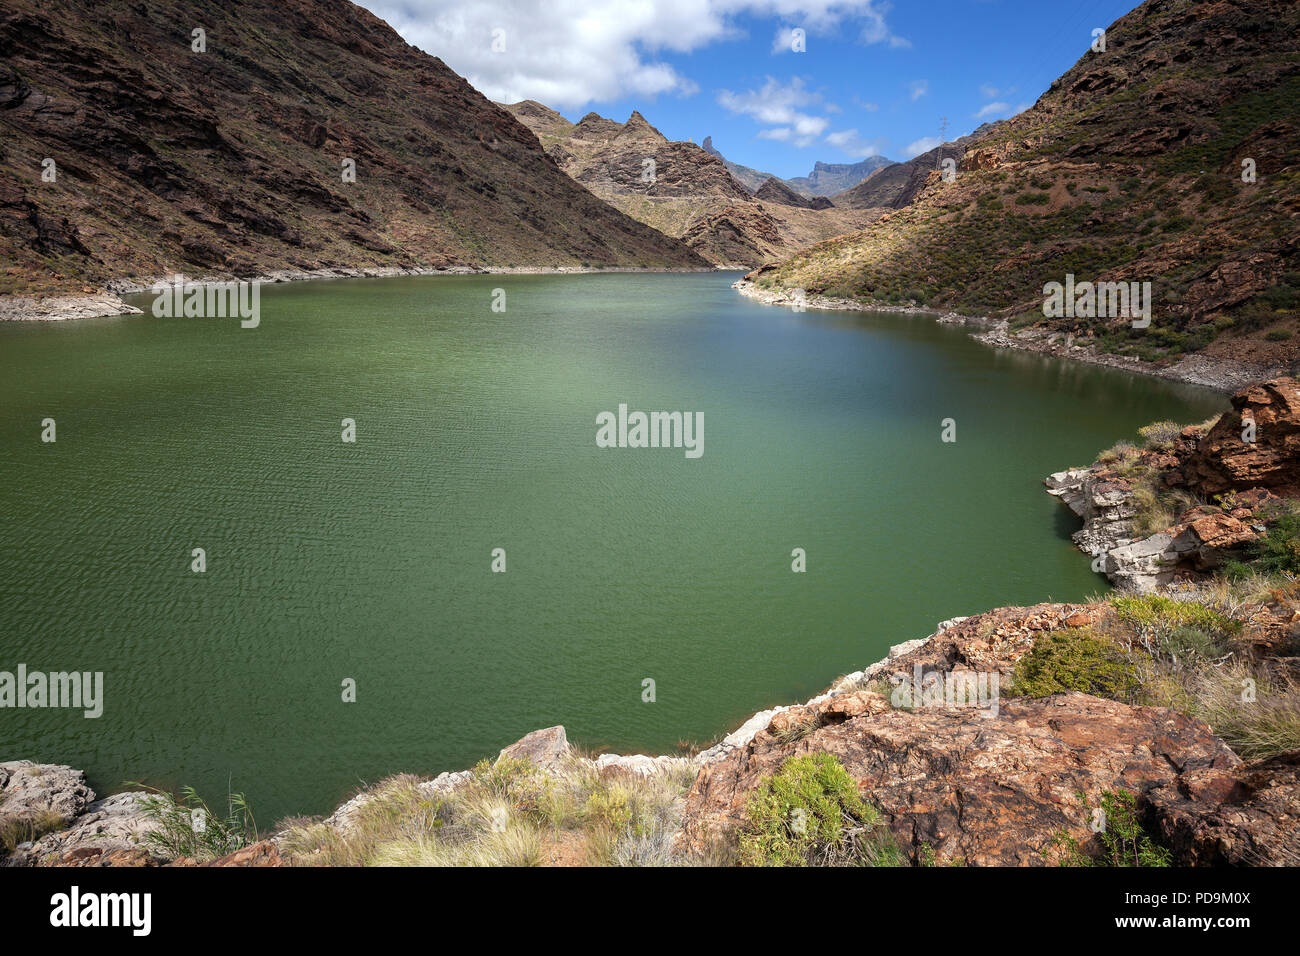 Presa del Parralillo Reservoir, Barranco Tejada, Gran Canaria, Canary Islands, Spain Stock Photo